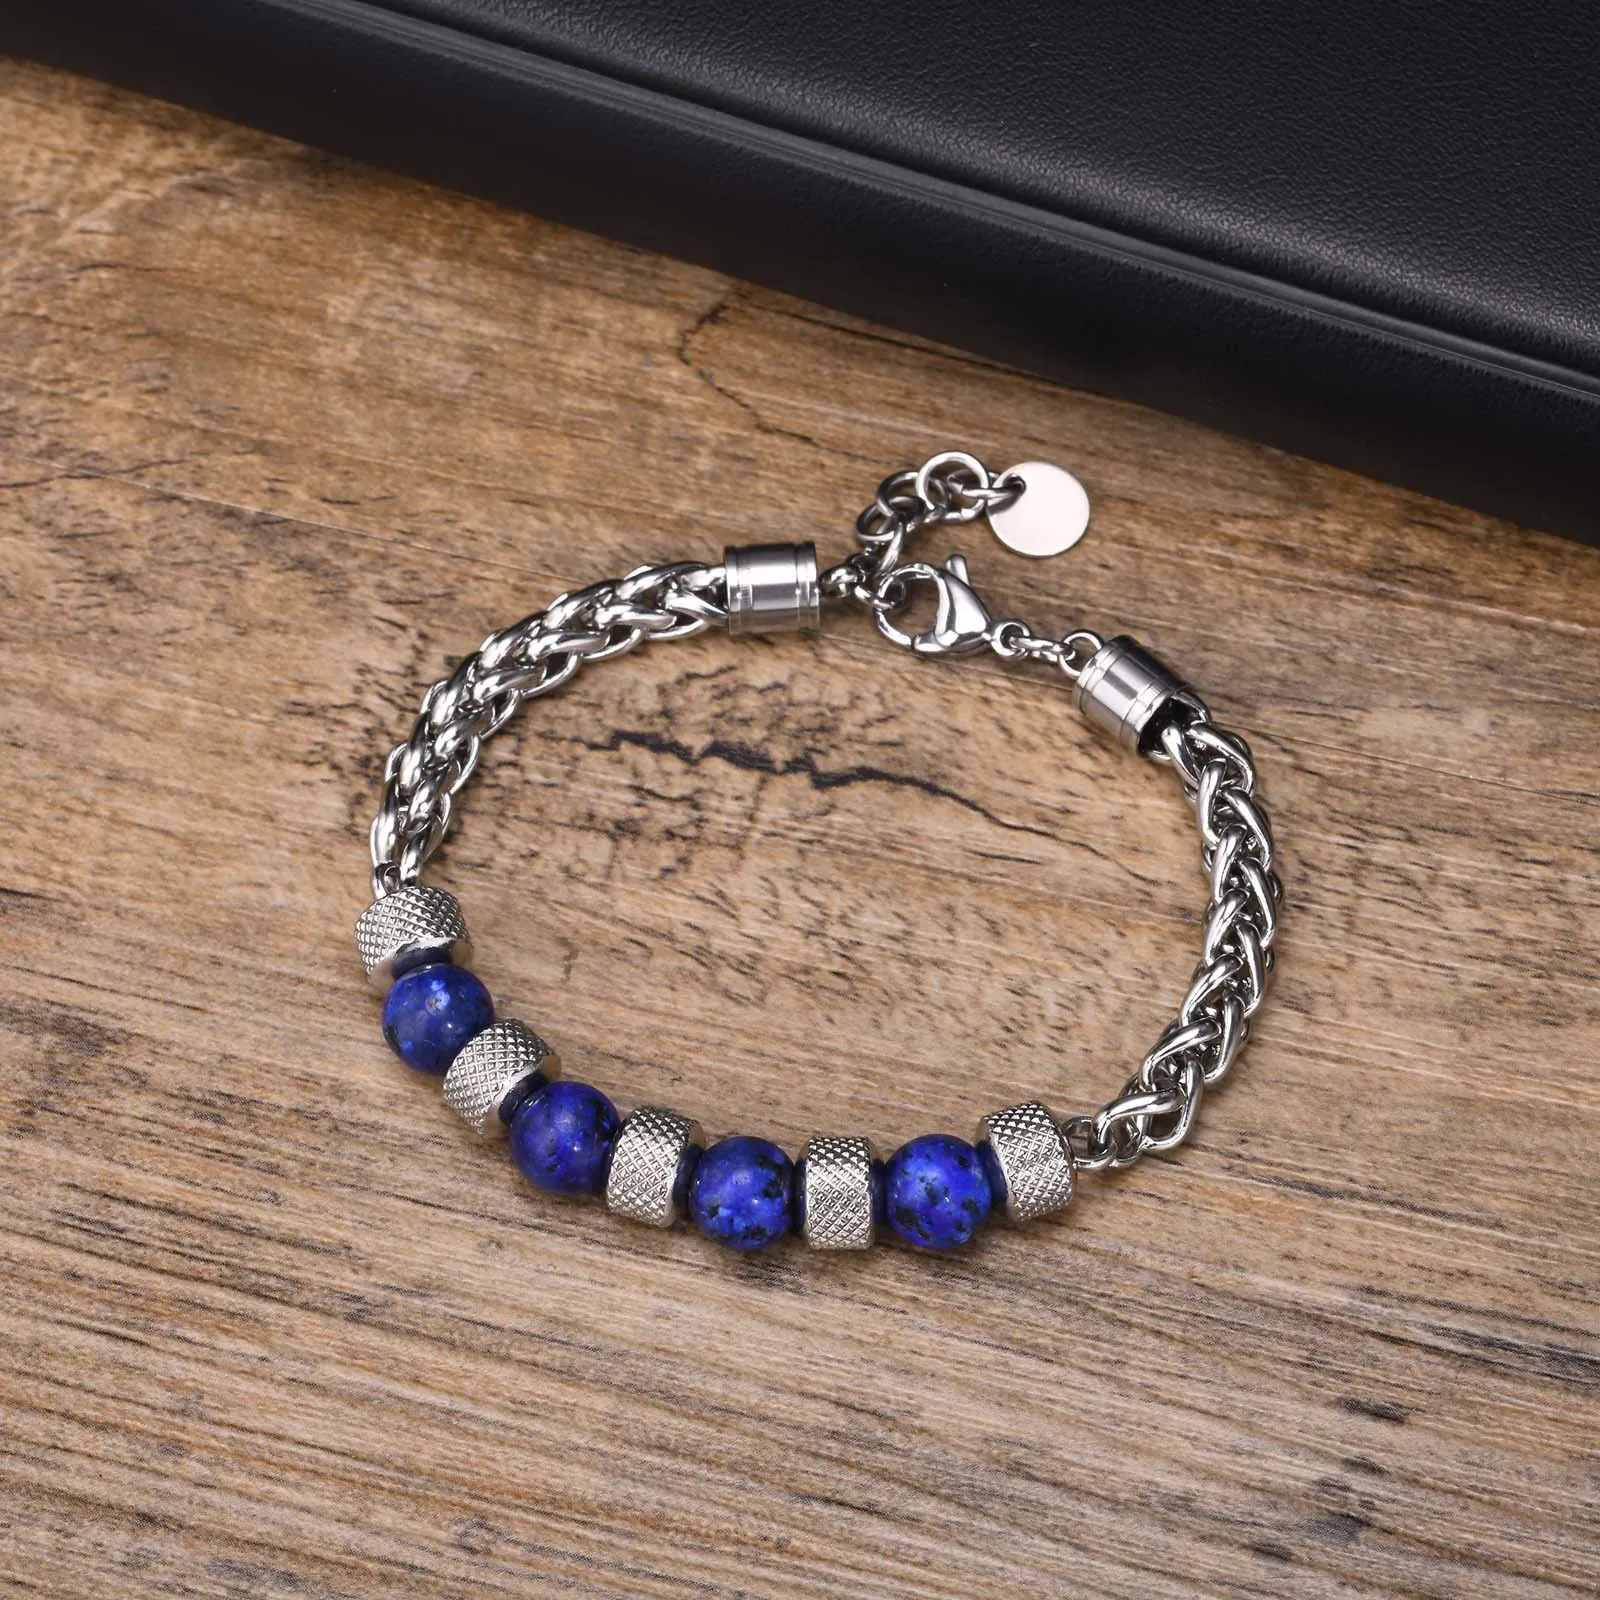 Stainless Steel Tiger Eye Stone Black Agate Beaded Braided Chain Bracelet for Men 18cm+3cm